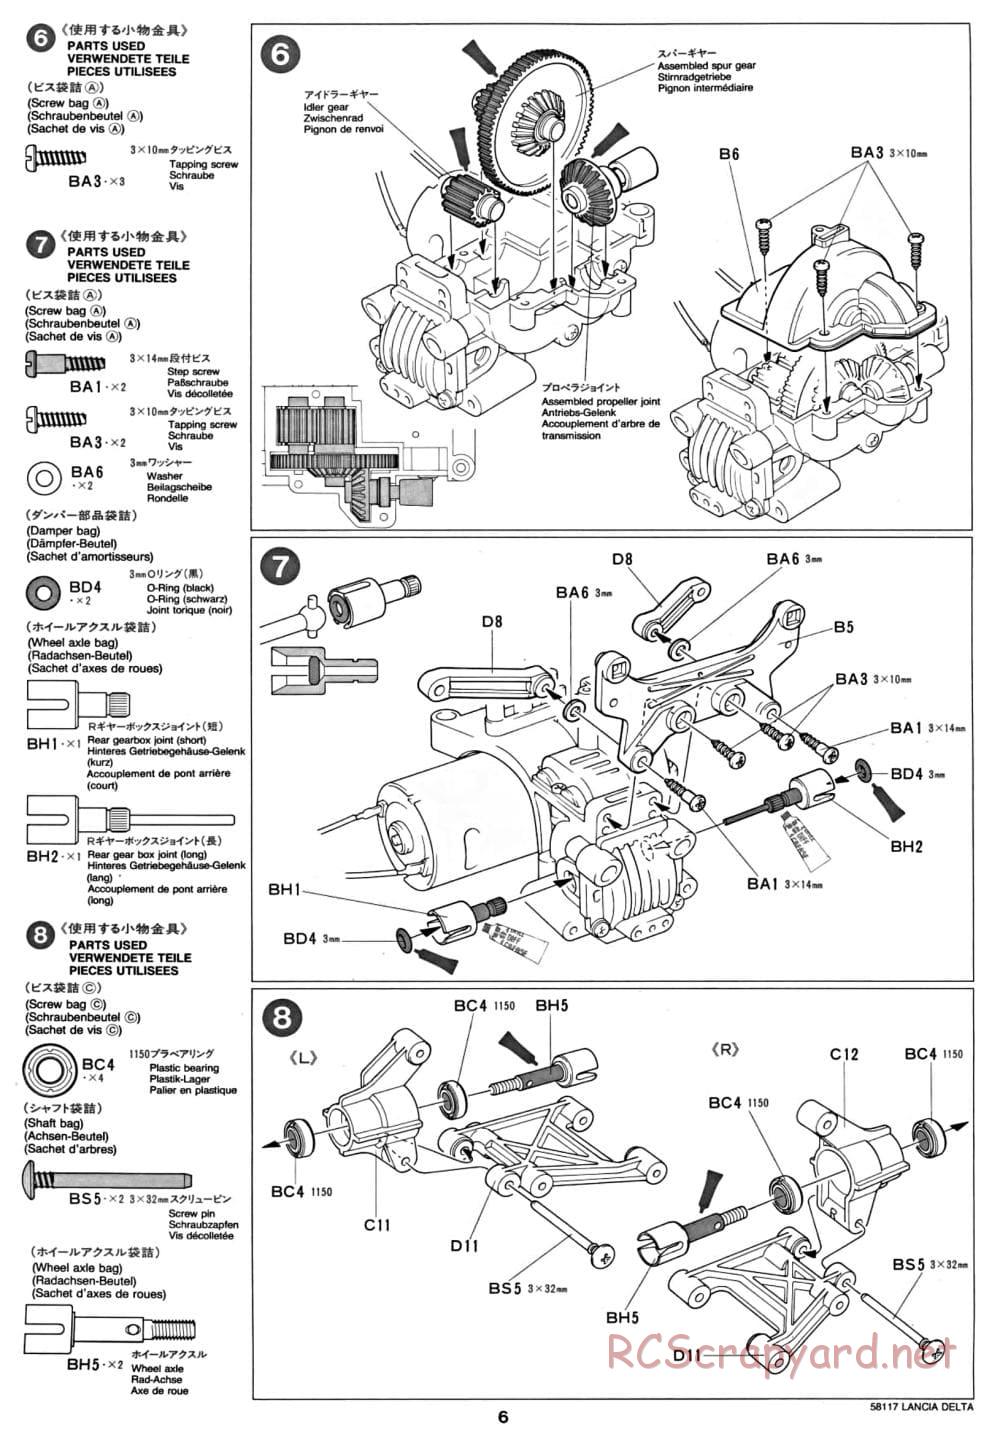 Tamiya - Lancia Delta HF Integrale - TA-01 Chassis - Manual - Page 6